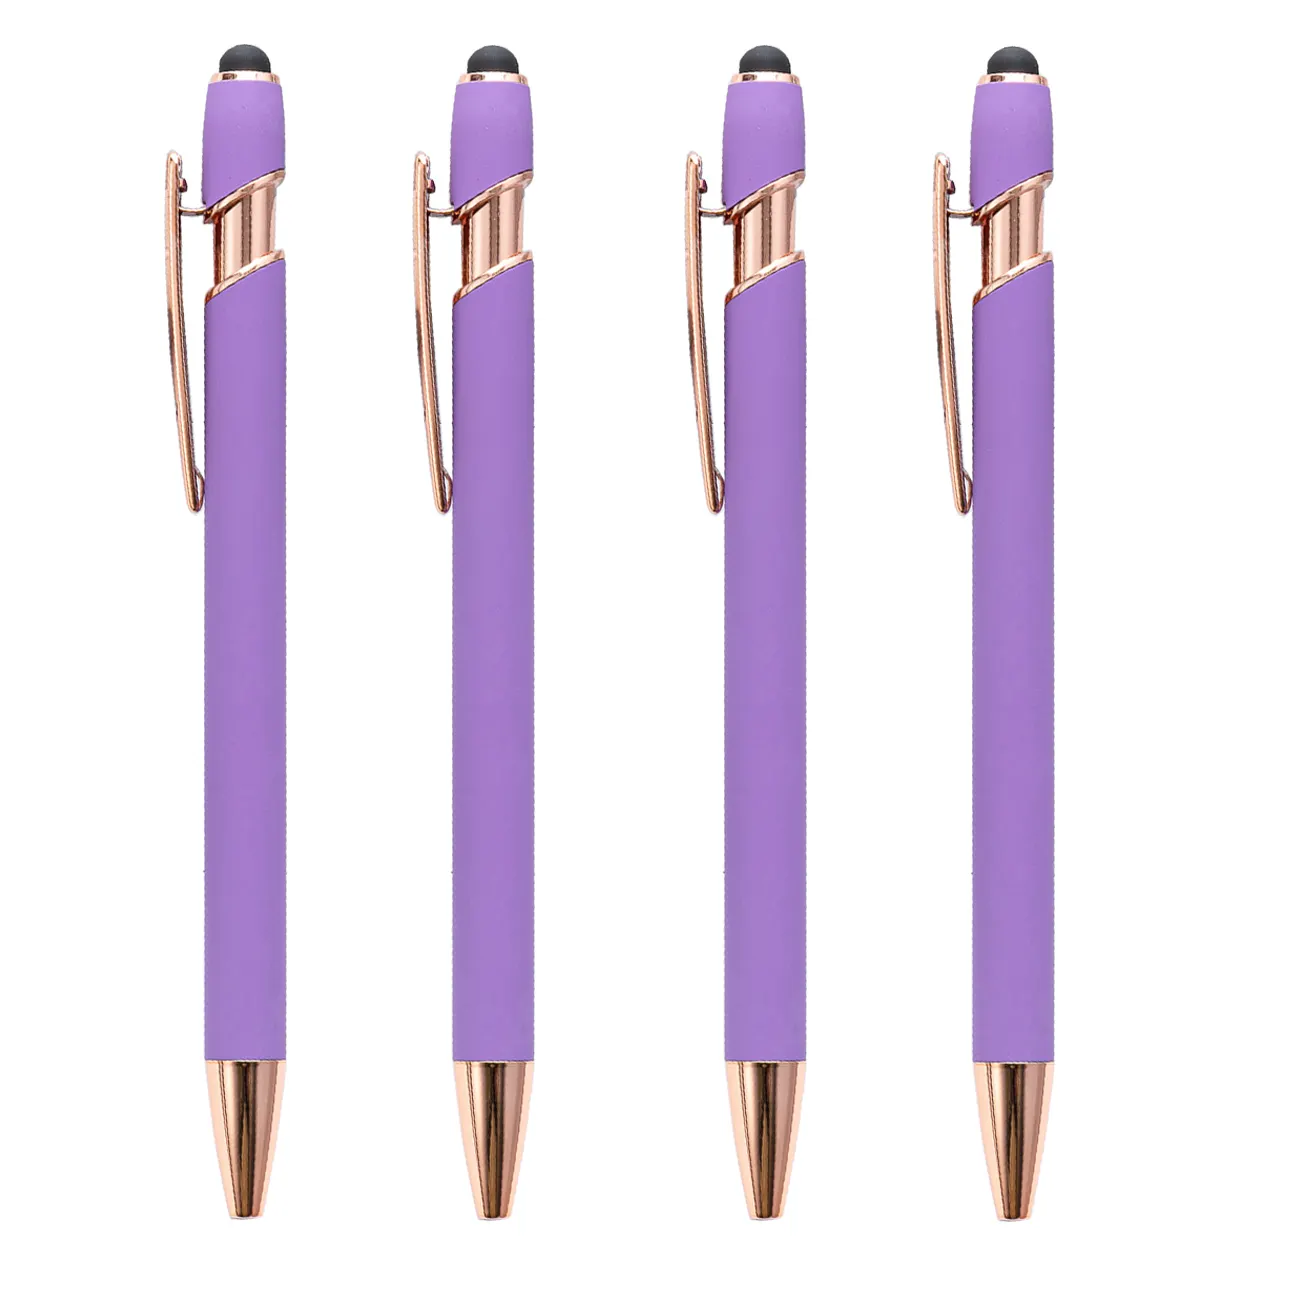 ปากกาลูกลื่นสีม่วงสีทองกุหลาบสีม่วงสำหรับการโฆษณาของขวัญส่งเสริมการขายปากกาโลหะสั่งทำได้